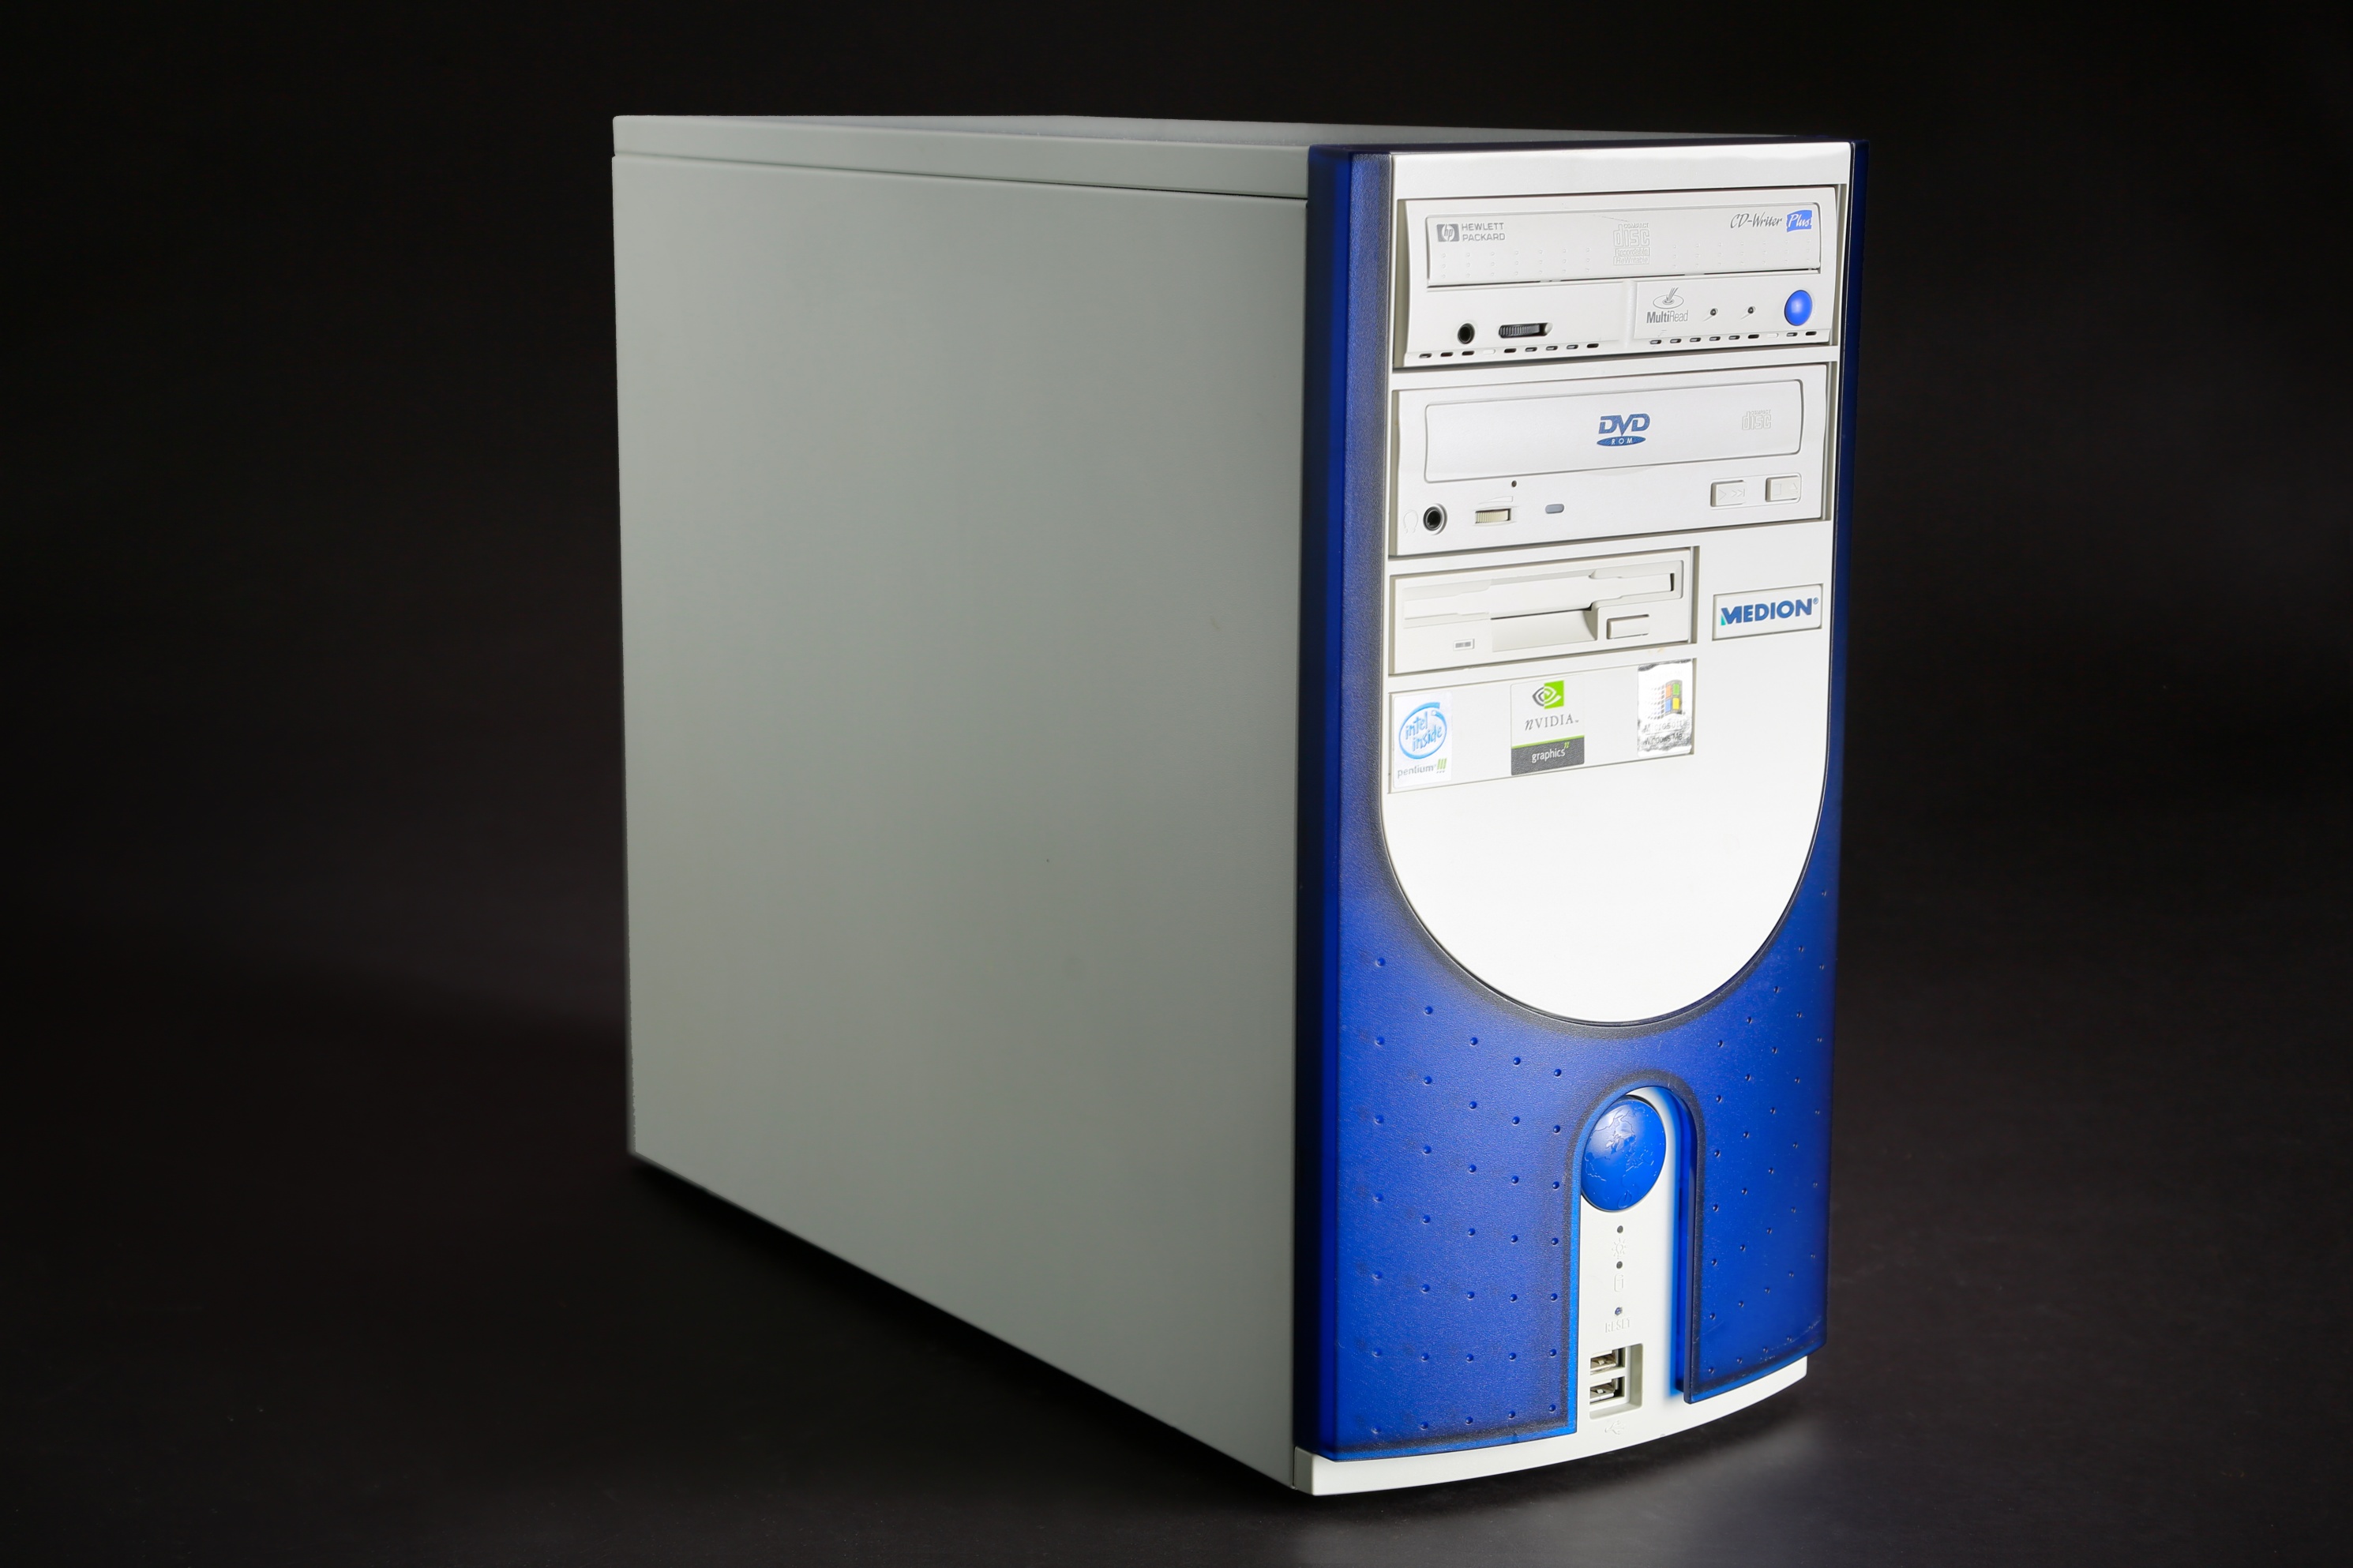 Medion PC MT5 Pentium III 900 MHz - Aldi PC | Europeana